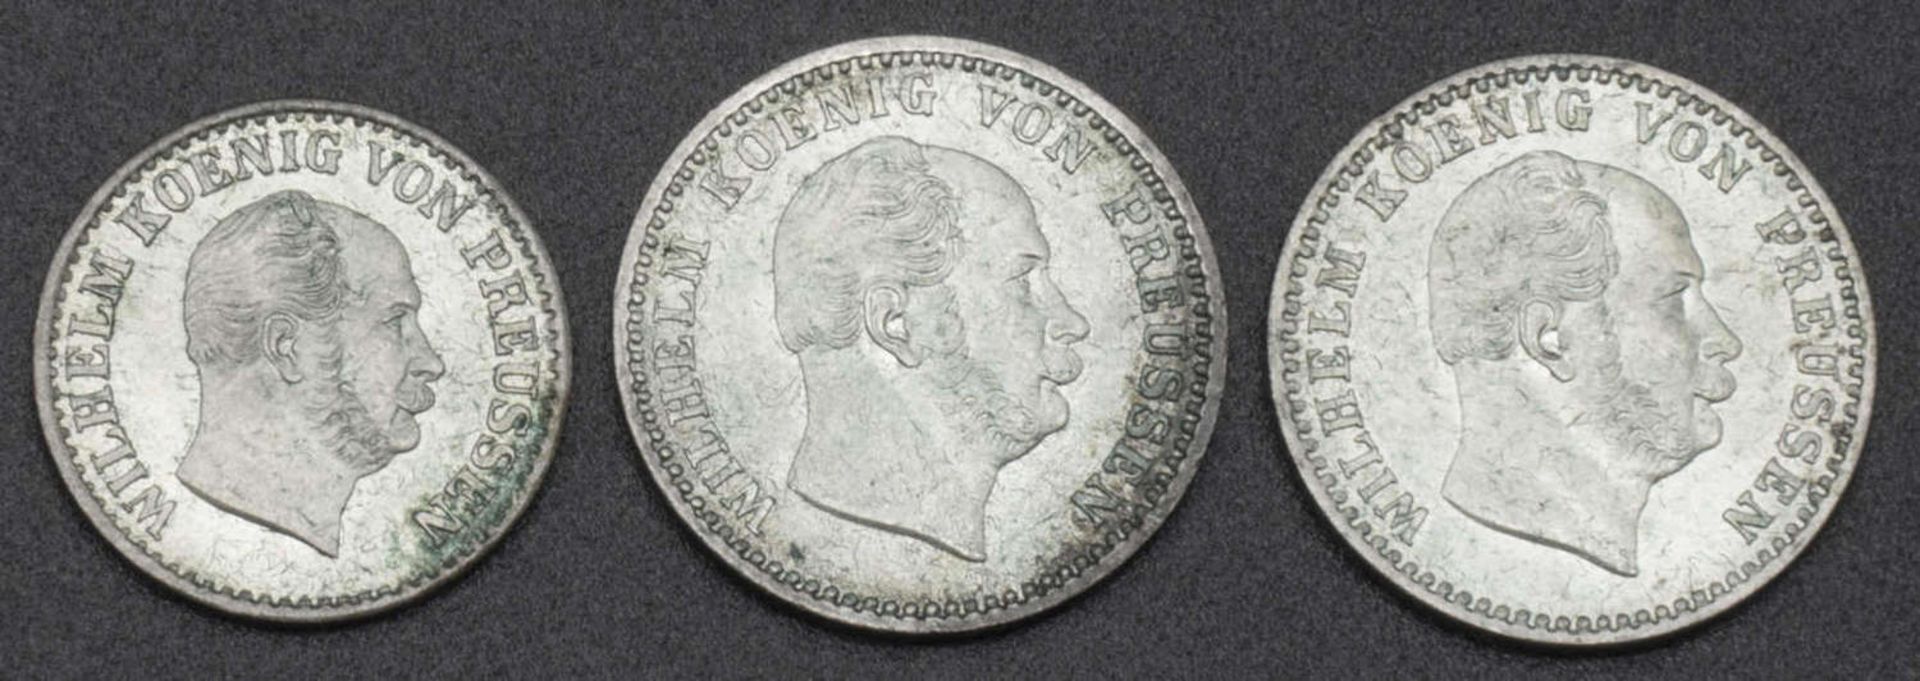 Kaiserreich Preußen, kleines Lot Silbergroschen, dabei 2x 2,5 Groschen, sowie 1 Silbergroschen.